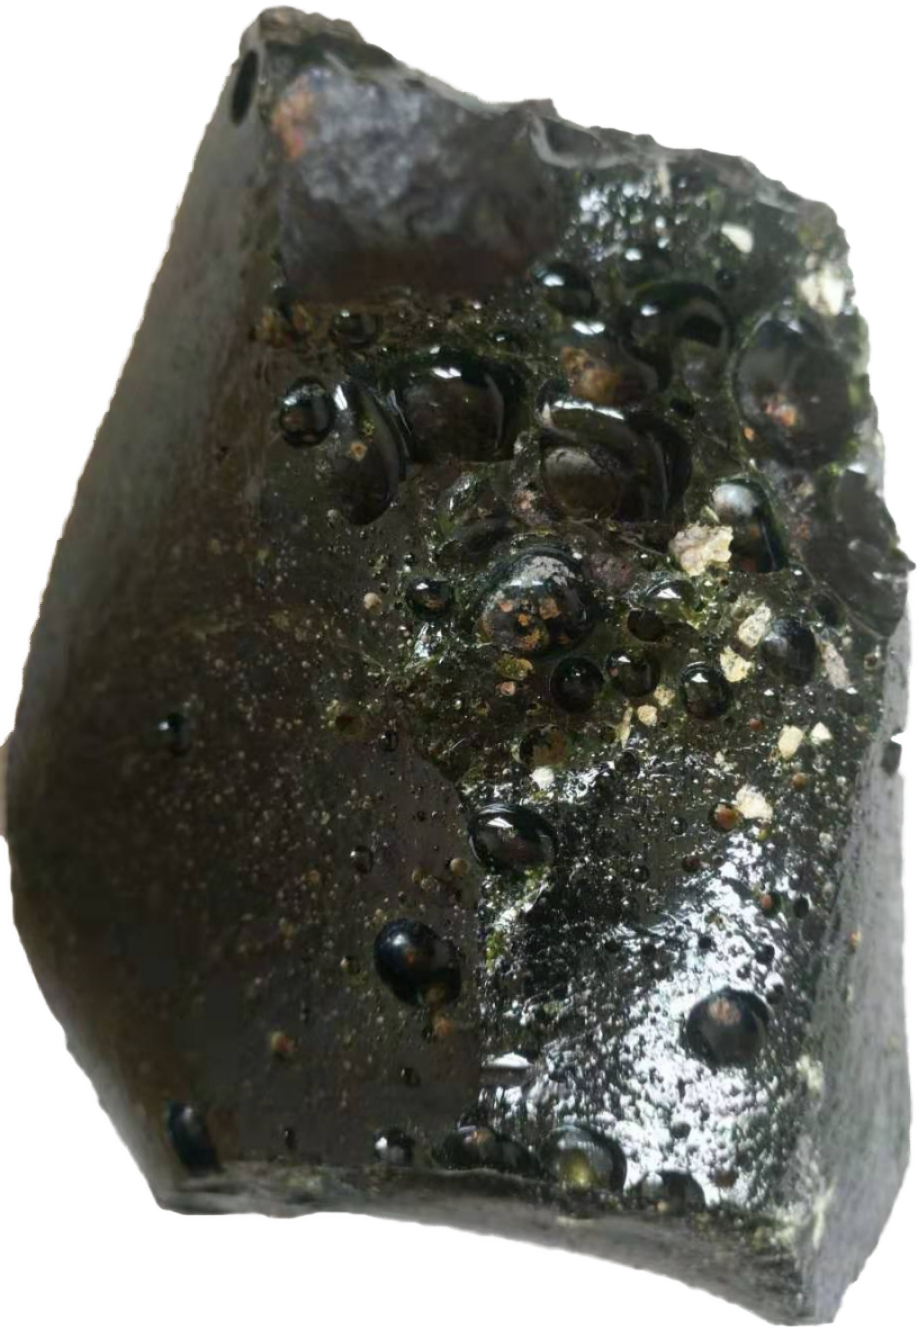 这颗玻璃陨石整体呈现墨黑色,不规则形状,表层具拉长状气泡及大小不等